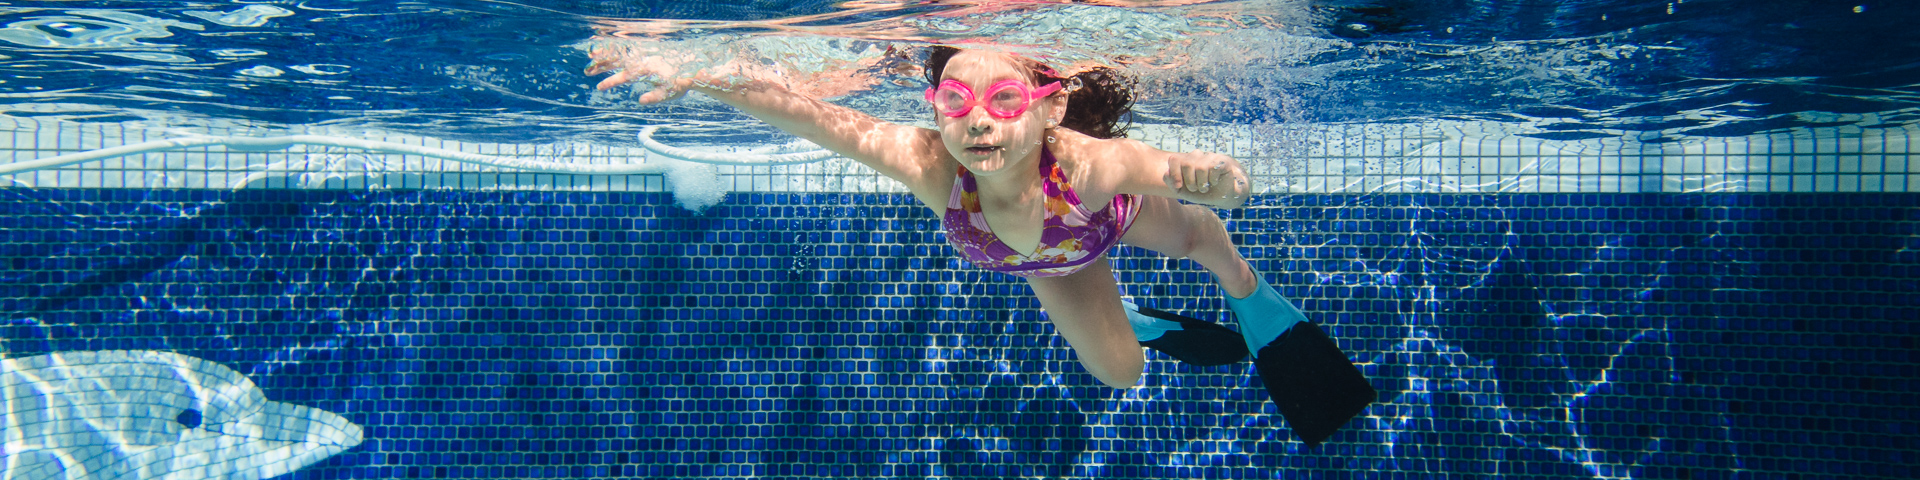 seattle child photographer underwater photos